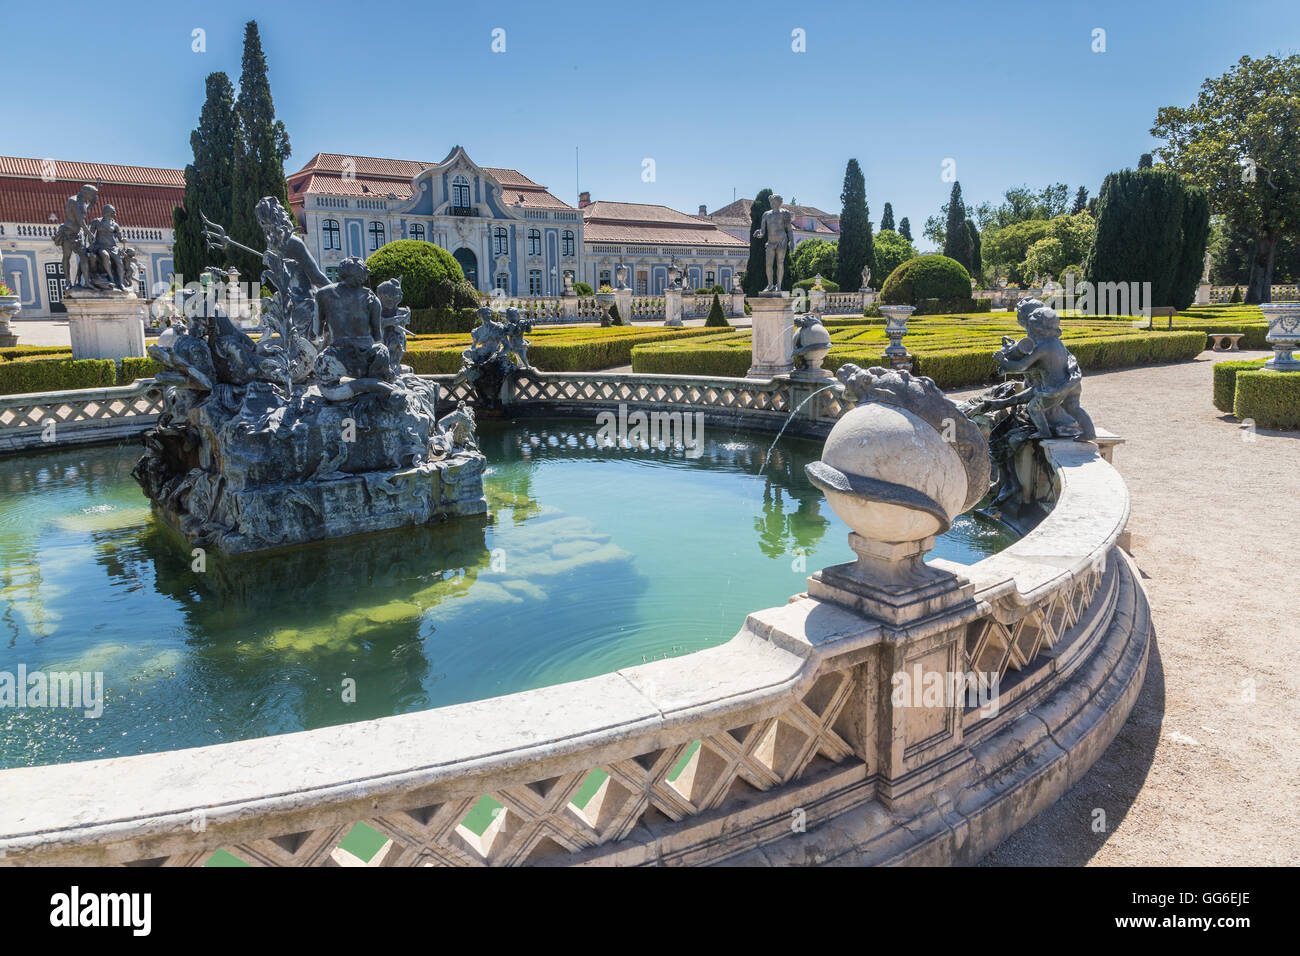 Fontaines et statues ornementales dans les jardins de la résidence royale du Palais de Queluz, Lisbonne, Portugal, Europe Banque D'Images